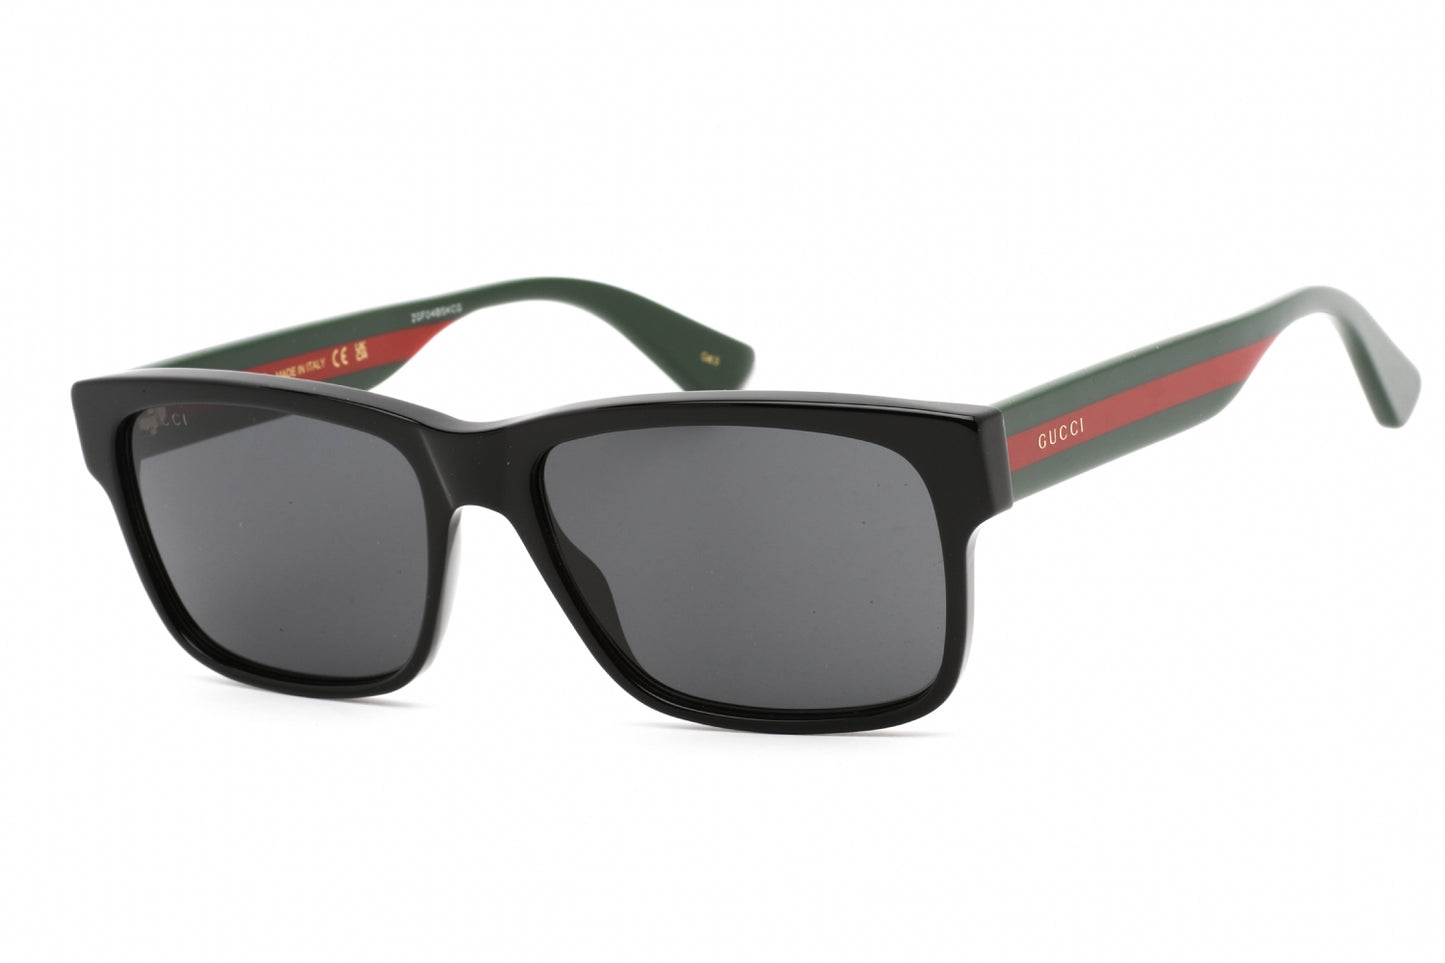 Gucci GG0340S-006 58mm New Sunglasses